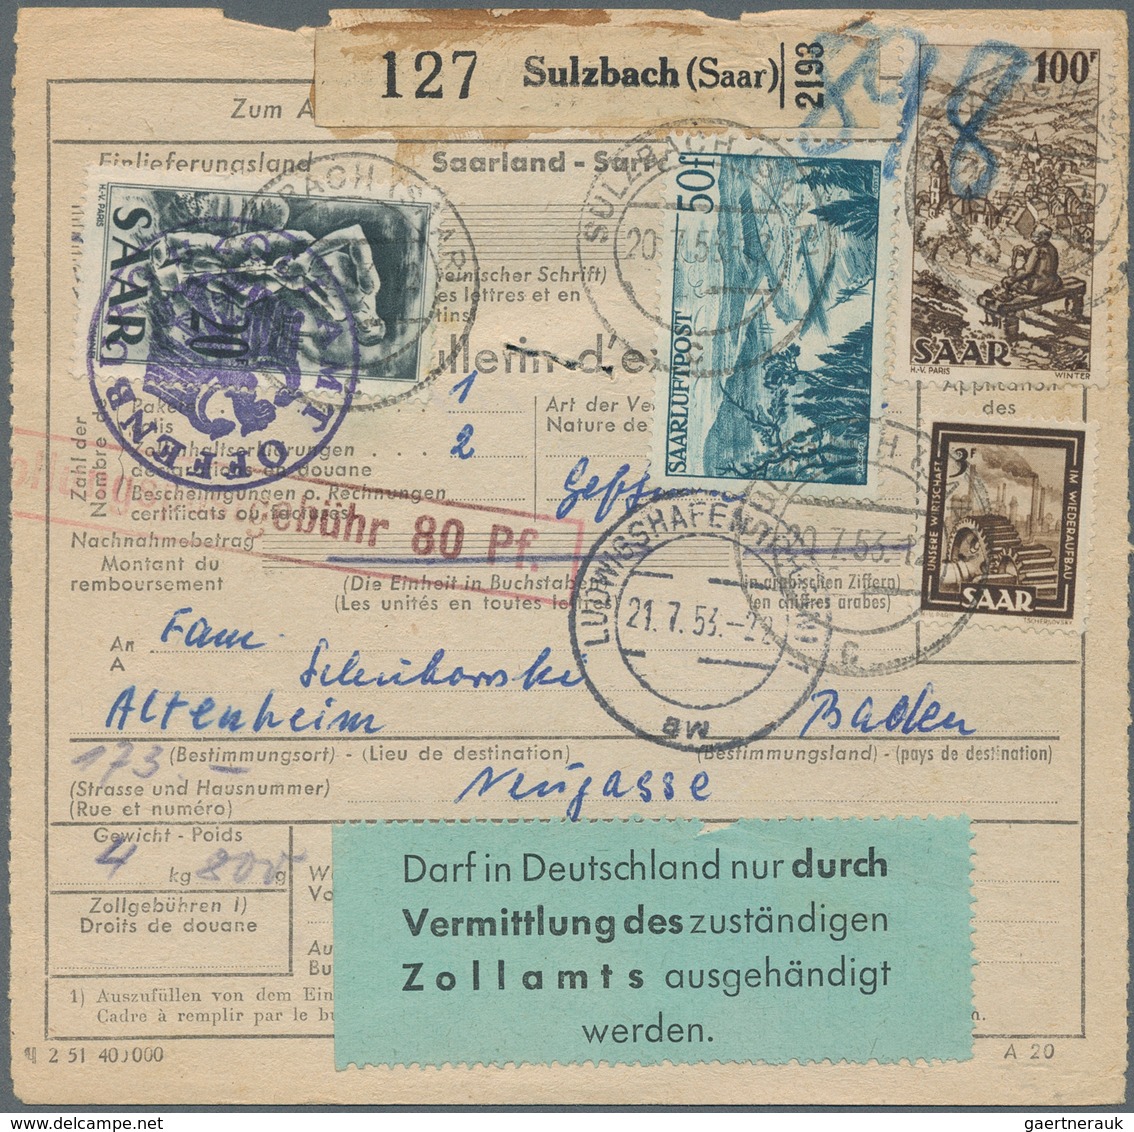 Deutschland nach 1945: 1945-1990, rund 900 Paketkarten, Zonen, Saar, Bund, Berlin und DDR, dabei vie